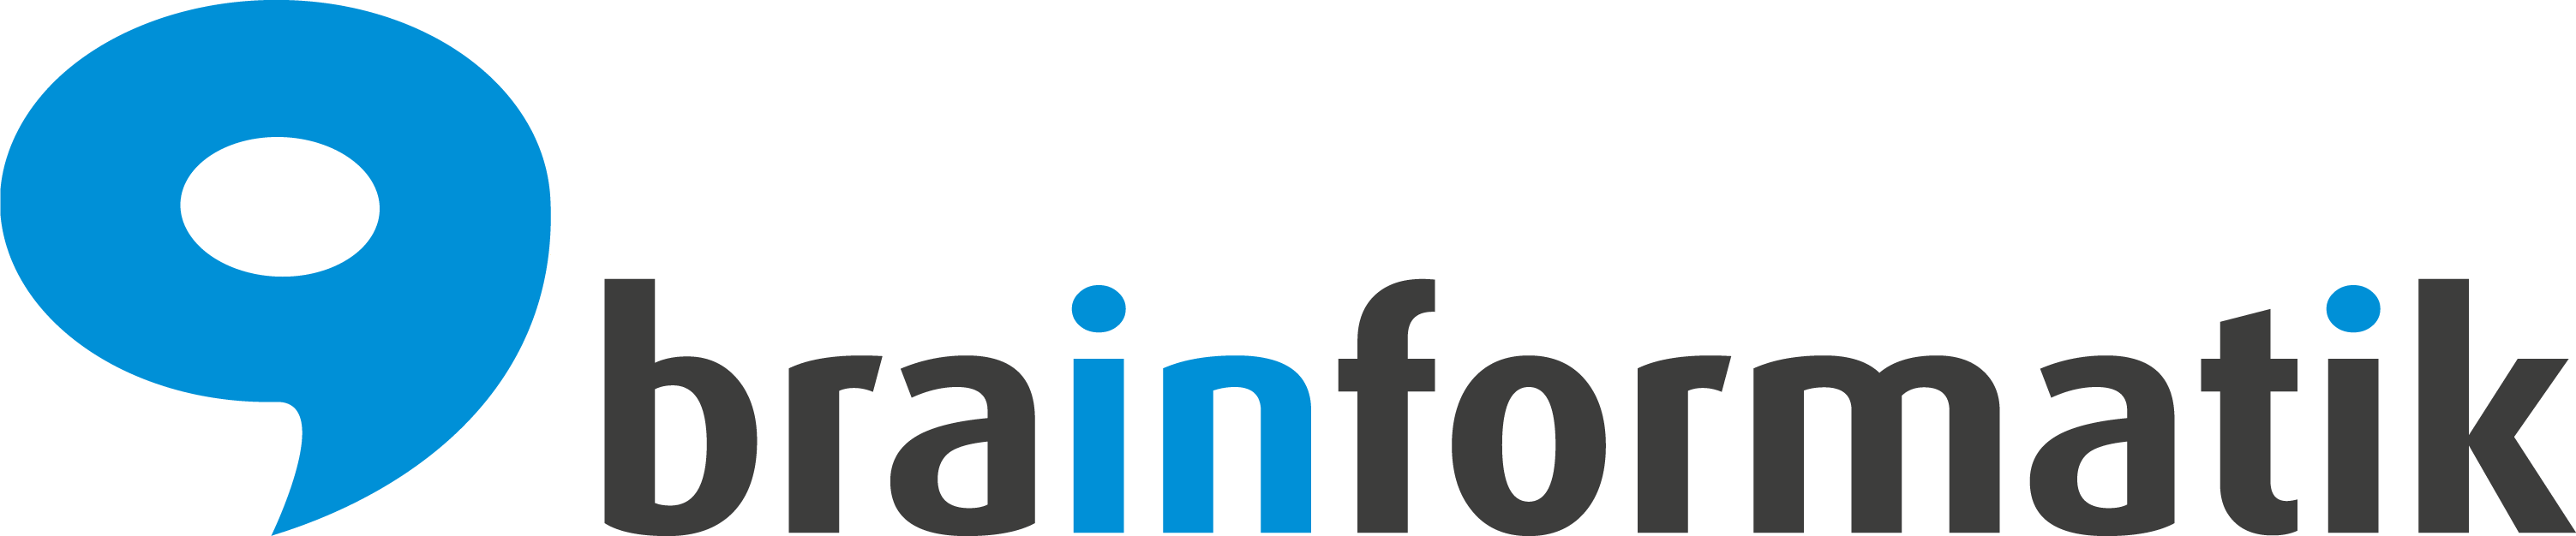 Brainformatik GmbH Logo